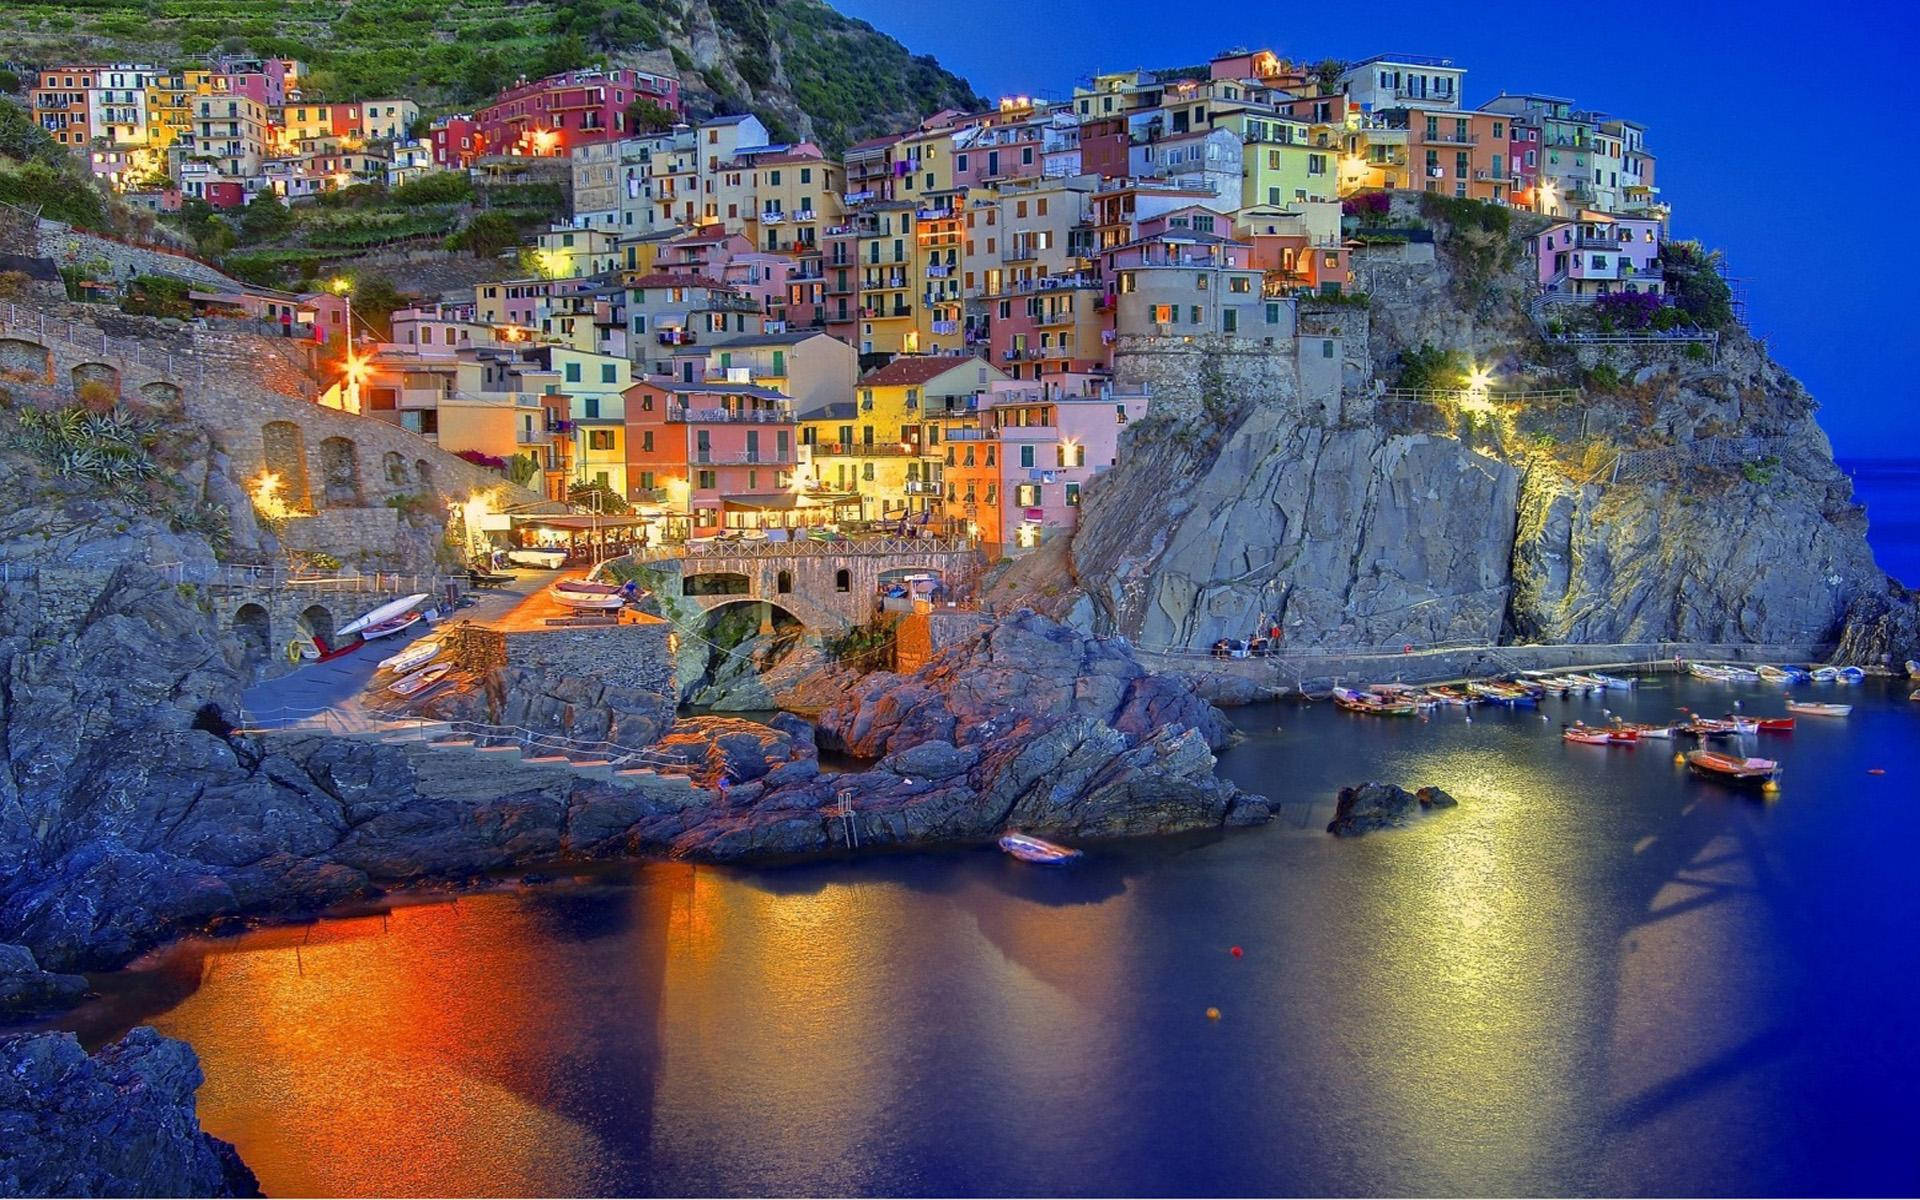 Tải hình nền Capri Ý miễn phí: Capri - hòn đảo nổi tiếng của Ý, với những cảnh quan tuyệt đẹp và phong cảnh nước biển đầy màu sắc. Hãy tải những hình nền Capri Ý miễn phí để mang bầu không khí của đảo đến cho màn hình desktop của bạn.